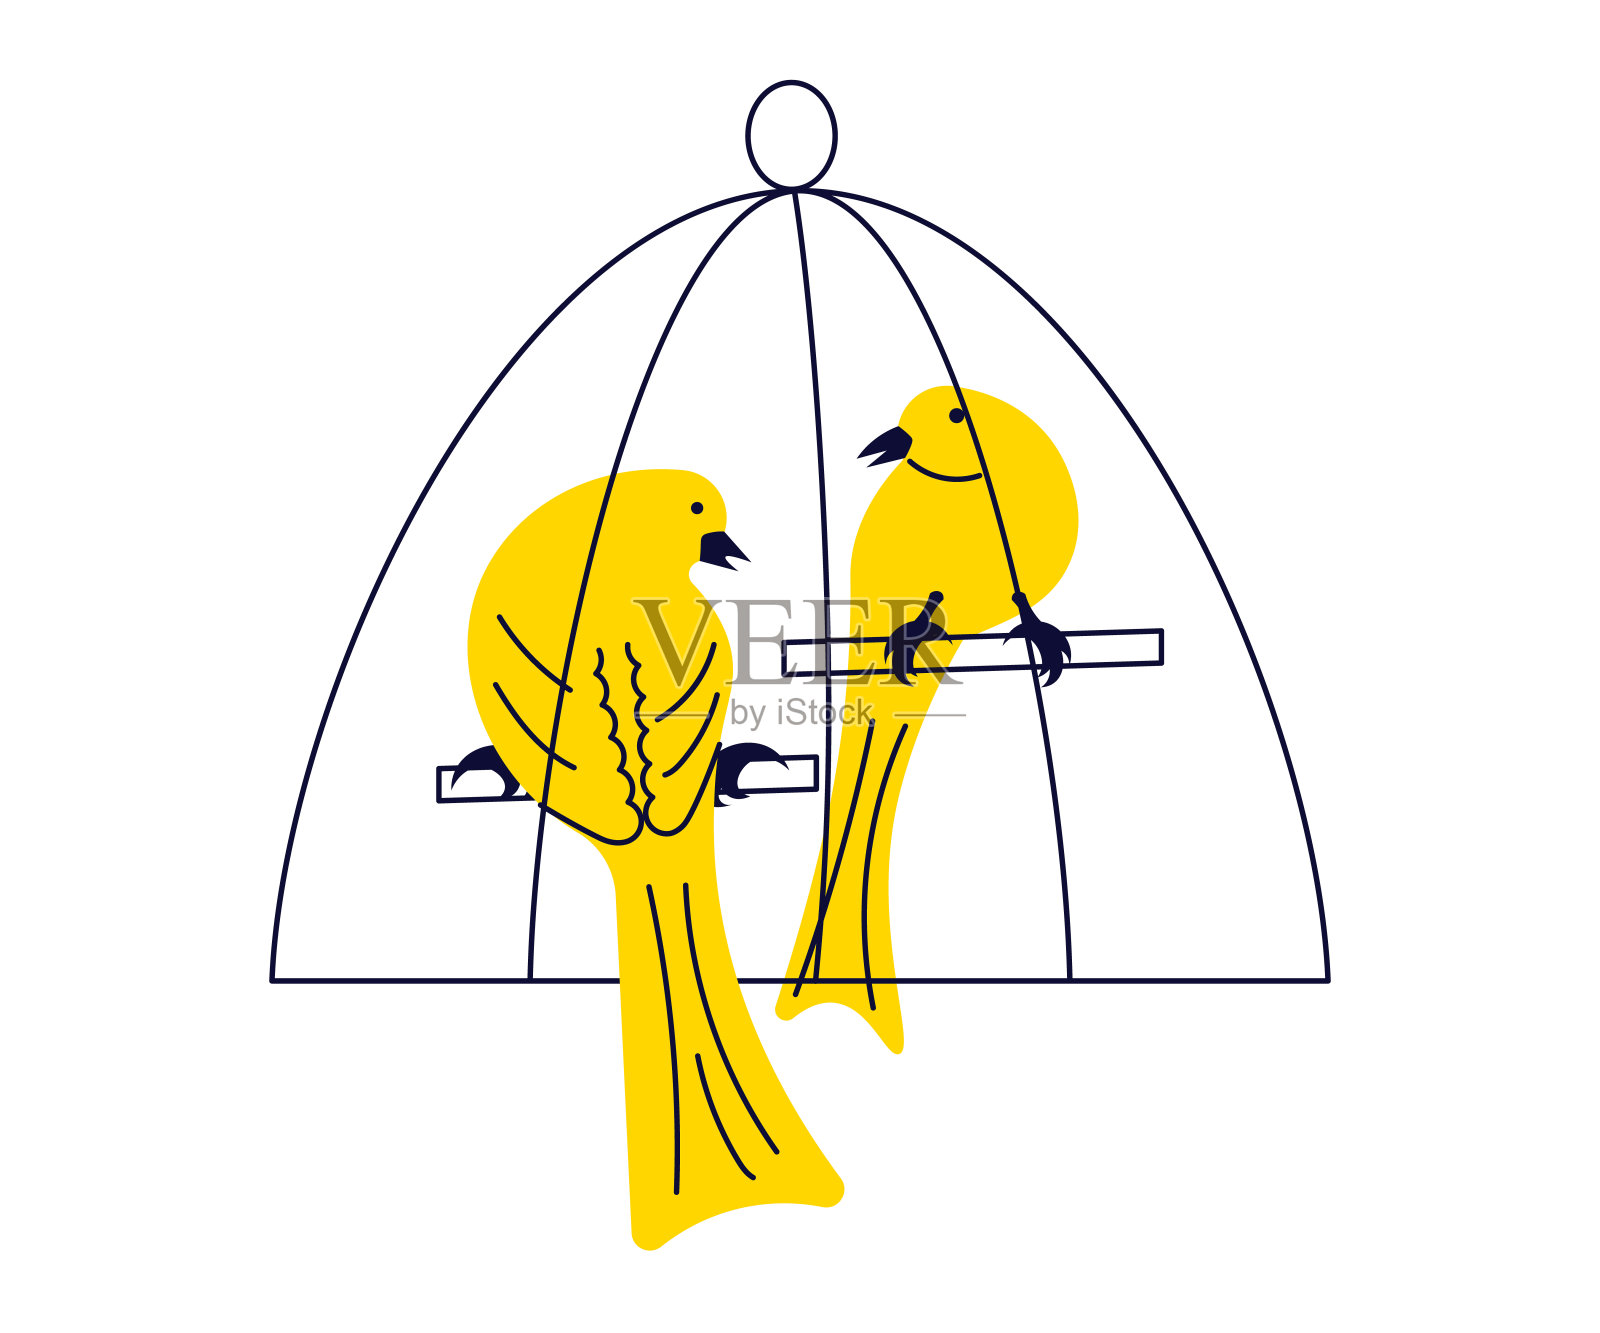 在被隔绝的一只金黄笼子的金丝雀 库存图片. 图片 包括有 金黄, 工作室, 视图, 一个, 双翼飞机, 逗人喜爱 - 136363531